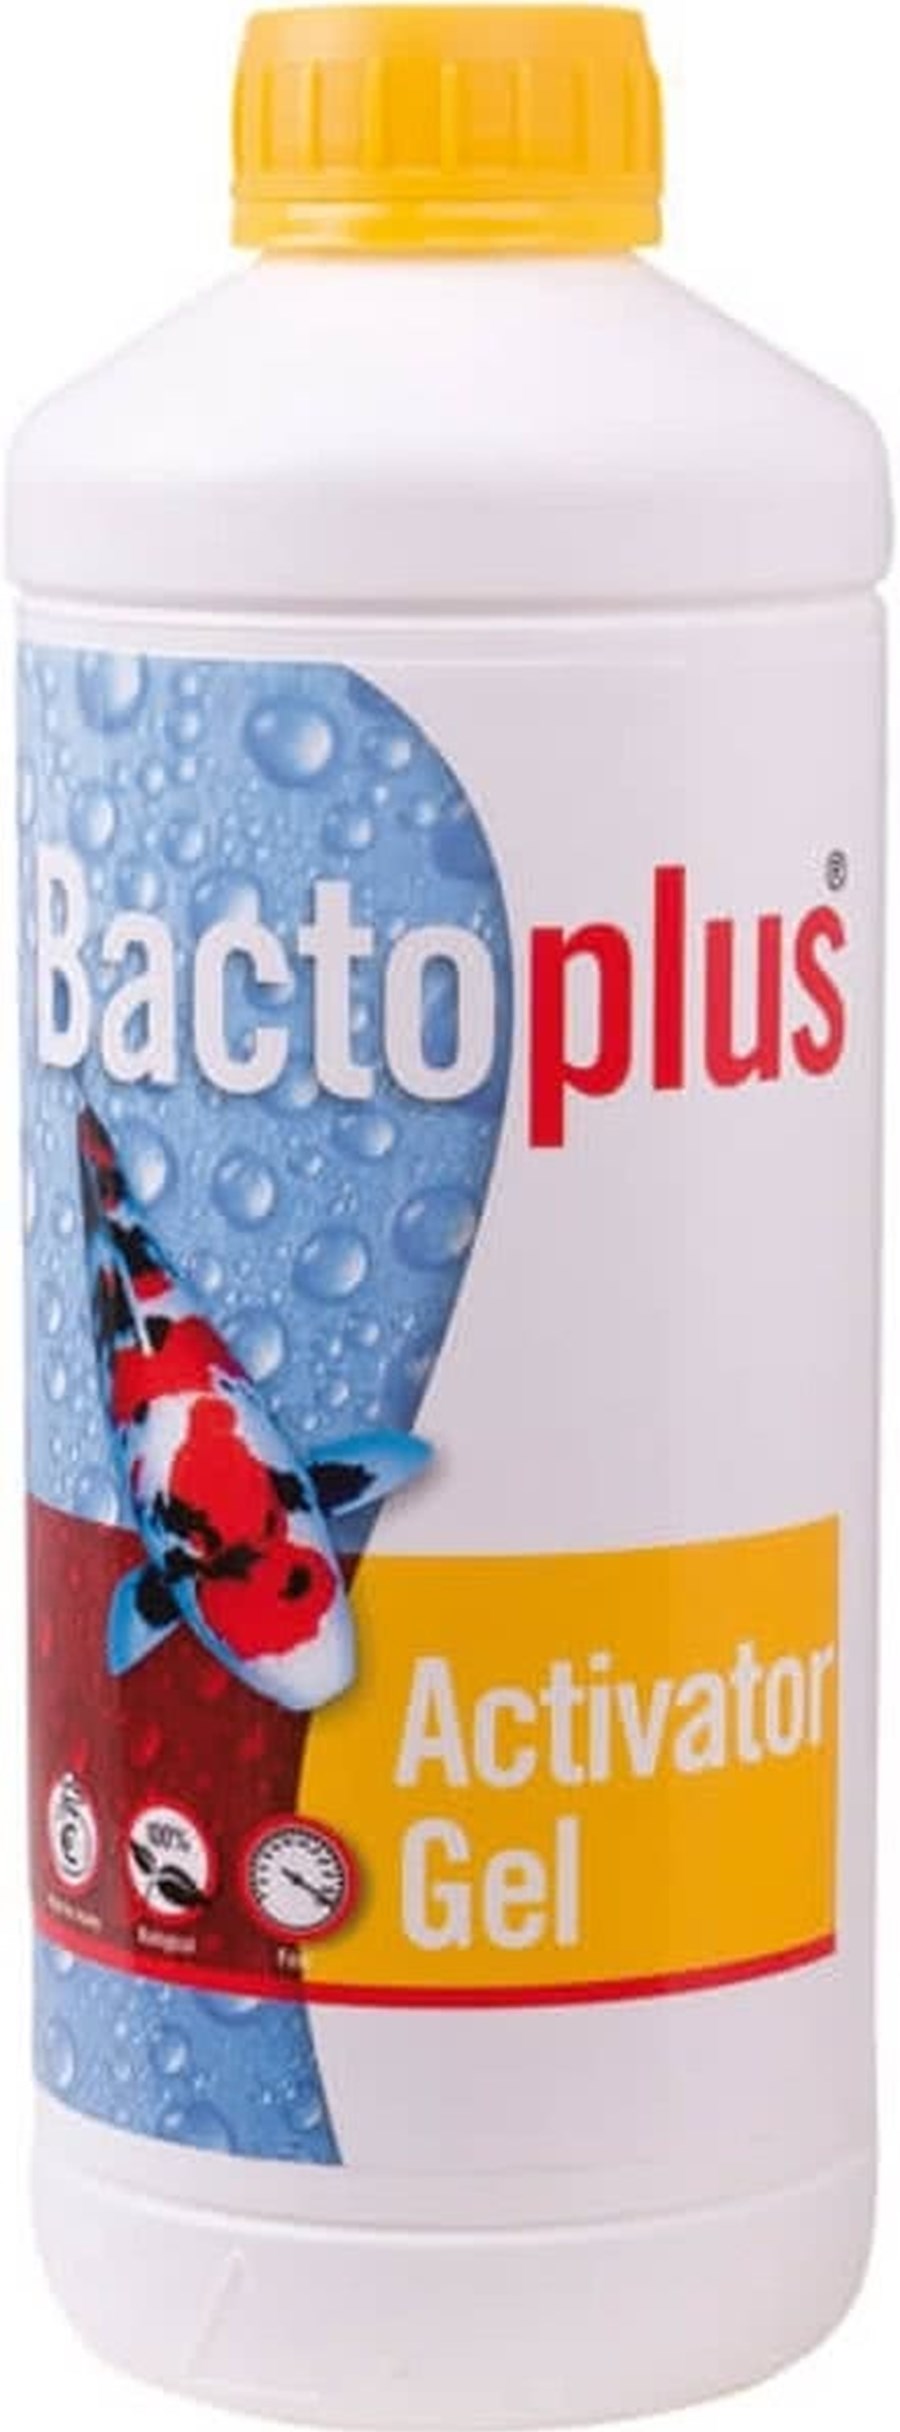 BACTOPLUS ACTIVATOR GEL 1 LTR pour 10000 litres